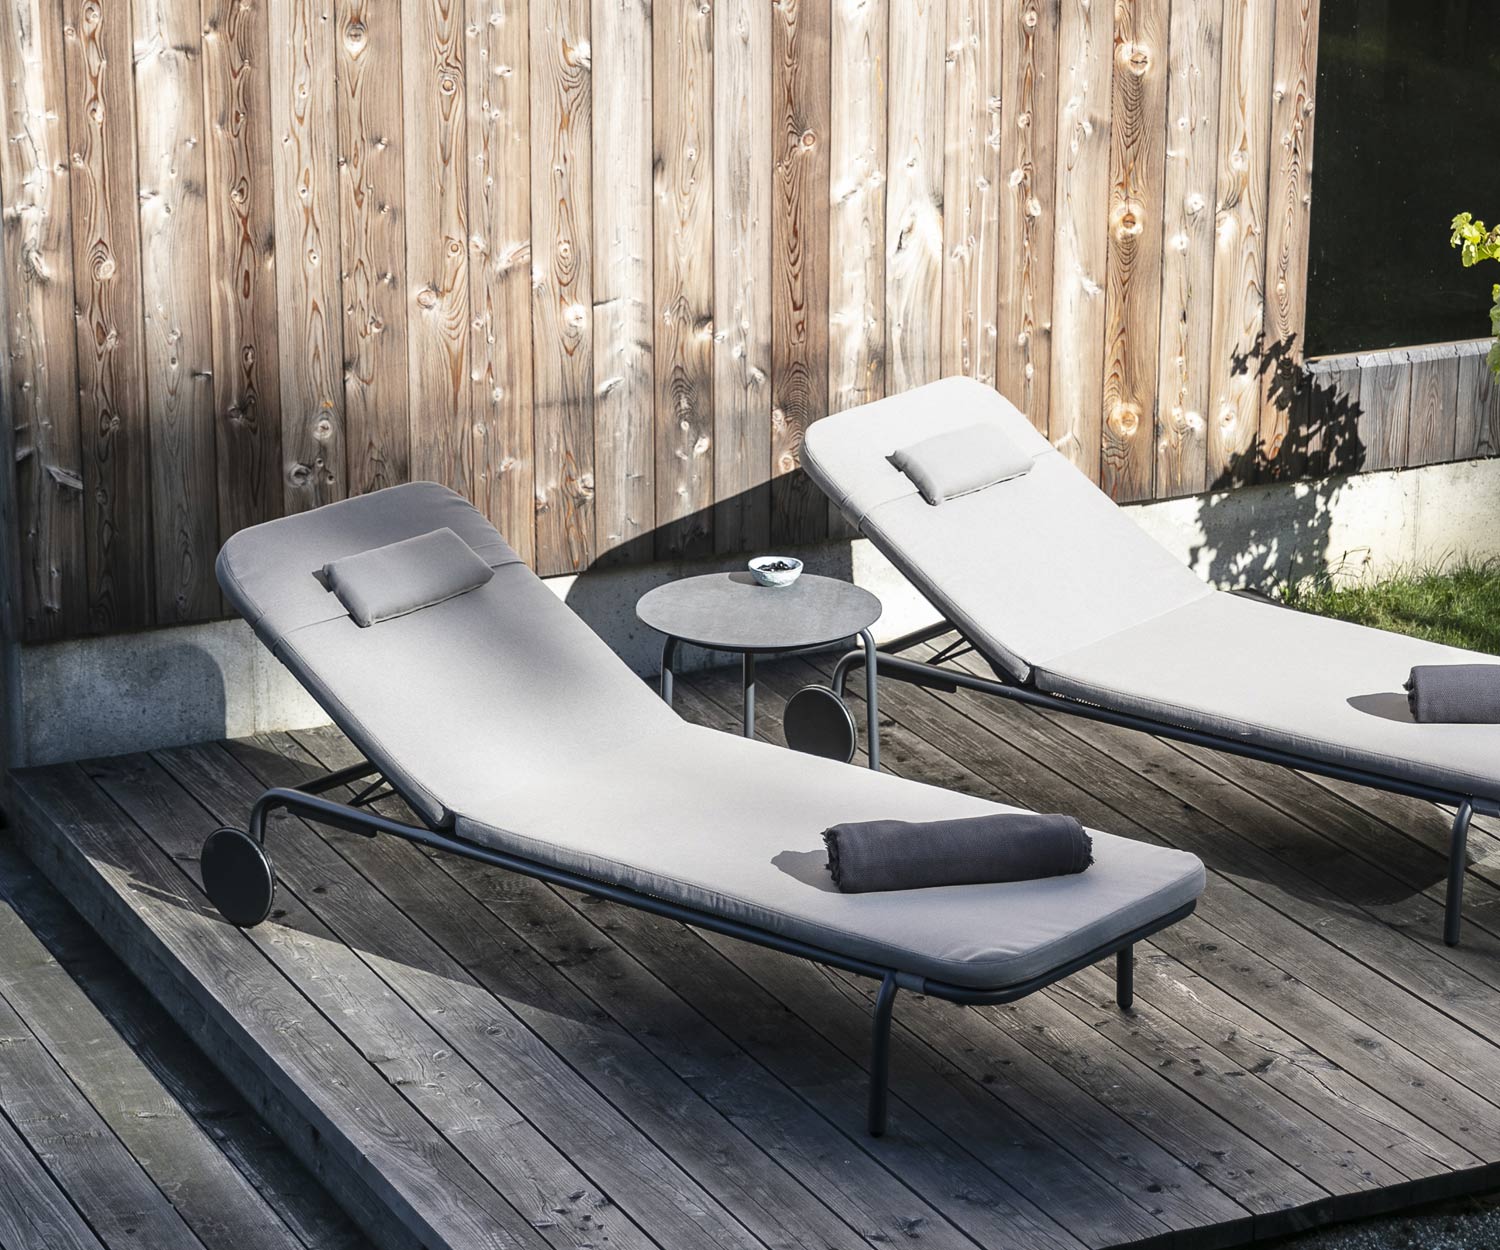 Table d'appoint design Starling de Todus avec deux chaises longues de jardin sur véranda en bois